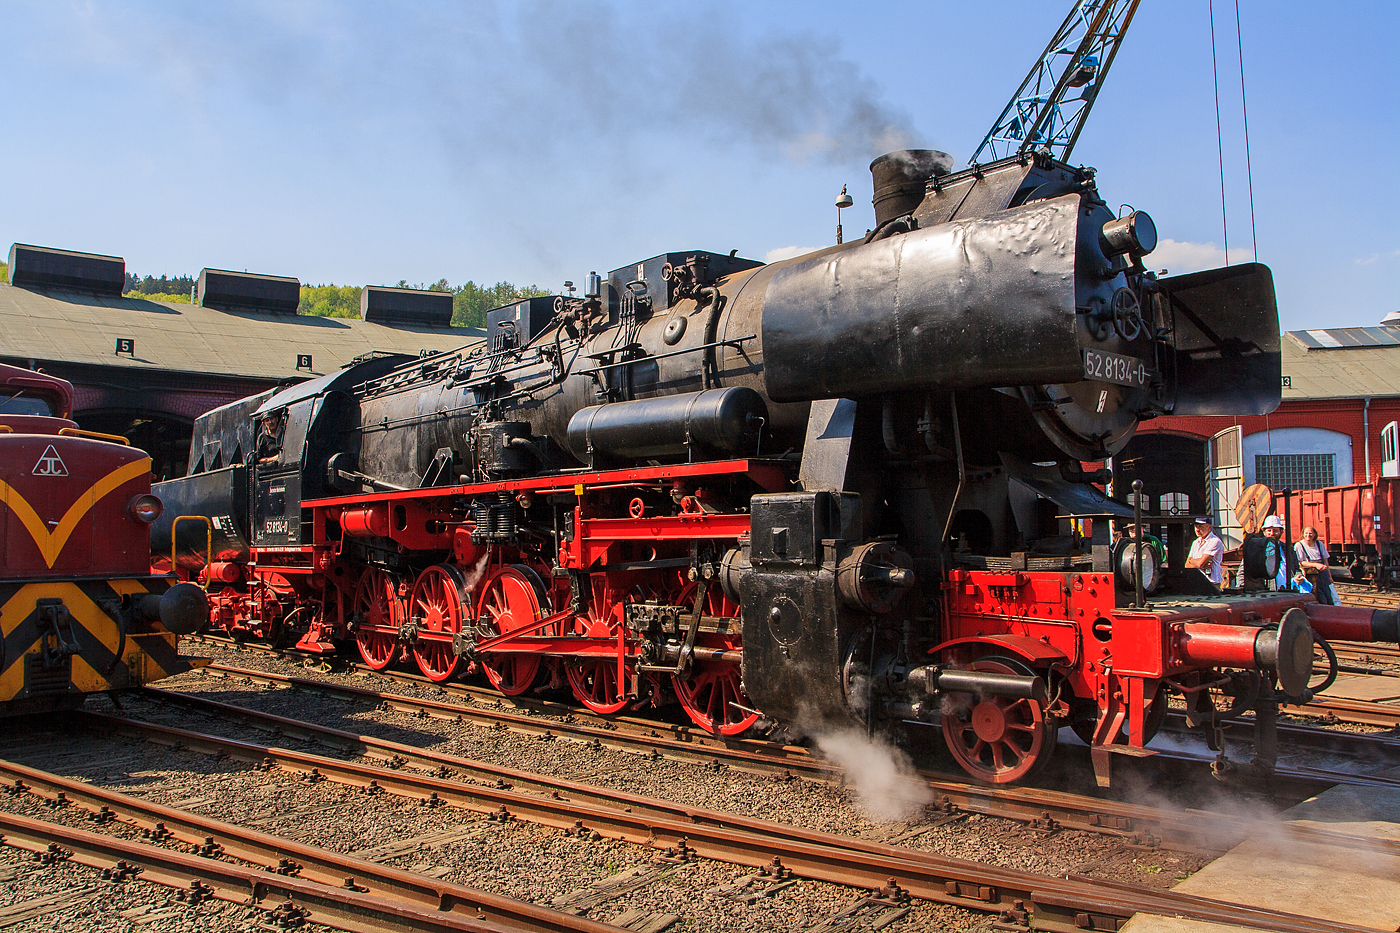 Die 52 8134-0 (90 80 0051 134-9 D-EFBS) der Eisenbahnfreunde Betzdorf (zur Zeit der Aufnahme) fährt am 23.04.2011 im Südwestfälische Eisenbahnmuseum in Siegen auf die Drehscheibe.

Die Lok war, bedingt durch die Wiedervereinigung, eine der letzten Normalspurigen Dampfloks der DB. Zudem war sie als 052 134-4 eine der wenigen waren 52 der DB (BR 52.80). Sie wurde am 05.12.1994 z-gestellt und am 05.07.1995 bei der DBAG ausgemustert. 

Die Lok wurde 1965 im Reichsbahnausbesserungswerk (RAW) Stendal
aus der 1943 bei der Lokfabrik Wien-Floridsdorf (Fabriknummer 16591) gebauten 52 7138 rekonstruiert.

LEBENSLAUF:
1943 	bis 1965 - DR 52 7138
1965 bis 1970 - DR 52 8134
1970 bis 1992 - DR 52 8134-0
1992/1993 - DR 052 134-4
Ab 01.01.1994 - DB 052 134-4
05.07.1995 Ausmusterung und Verkauf an an Privat 
Mai 1997 an EFB - Eisenbahnfreunde Betzdorf  e. V., als 52 8134-0
Zum 01.01.2007 - Vergabe der NVR-Nummer 90 80 0051 134-9 D-EFBS
Im Februar 2016 wurde sie an die ÖGEG - Österreichische Gesellschaft für Eisenbahngeschichte e. V. in Linz verkauft.

Die Reko-Lokomotiven der Baureihe 52.80 entstanden ab 1960 bei der Deutschen Reichsbahn aus grundlegend überarbeiteten Kriegslokomotiven (KDL 1) der Baureihe 52. Diese als Rekonstruktion bezeichnete Modernisierung der Lokomotive erstreckte sich mit wenigen Ausnahmen auf fast alle Bauteile und Baugruppen der Maschine.

Nachdem dargelegt worden war, dass die Rekonstruktion wirtschaftlicher sei als das Generalreparaturprogramm, wurde dieses zurückgefahren und man begann im Frühsommer des Jahres 1960 im Raw Stendal mit der Rekonstruktion der Baureihe 52. Zum einen waren bei einigen Maschinen auch die Langkessel verschlissen, zum anderen ergaben sich damit Vorteile in der Unterhaltung. 200 Lokomotiven erhielten bis 1967 den ursprünglich für die Baureihe 50.35 konstruierten Verbrennungskammerkessel Typ 50E. Die Anpassungsarbeiten erfolgten ausschließlich am Rahmen. Dadurch blieben die Rekokessel freizügig tauschbar. Rekonstruiert wurden nur Maschinen mit Blechrahmen. Weitere markante Merkmale der Rekolokomotiven waren neue Zylinder in Schweißausführung, eine Mischvorwärmeranlage der Bauart IfS/DR und, bedingt durch den neuen Kessel, neue Führerhausvorderwände mit ovalen Fenstern. Der vorgesehene komplette Ersatz der Führerhäuser und die Kupplung mit neuen Tendern kam nicht zustande, da keine Kapazitäten dafür vorhanden waren. Die verschlissenen Wannentender 2’2’ T30 wurden meist mit neu gebauten Wannen versehen.

Weitere Rekonstruktionsmaßnahmen betrafen den Einbau von Achslagerstellkeilen und die Erneuerung der Krauss-Helmholtz-Lenkgestelle. Entgegen oft geäußerten, anderslautenden Meinungen wurden die Schieber im Rahmen der Rekonstruktion nicht ersetzt oder umgebaut. Die Lokomotiven behielten ihre Regelkolbenschieber mit Druckausgleichern der Bauart Winterthur und damit auch ihre schlechten Leerlaufeigenschaften. Erst in den 1980er Jahren wurden bei einigen Lokomotiven im Raw Meiningen Druckausgleichskolbenschieber der Bauart Trofimoff/Meiningen und Zylindersicherheitsventile eingebaut. Durch diesen Umbau verbesserten sich die Leerlaufeigenschaften der Maschinen enorm, was sich wiederum in der Einsparung von Schmier- und Brennstoffen bemerkbar machte.

Eine Reko-Maschine konnte in der Ebene 1400 Tonnen mit 70 km/h schleppen. Die Grenzlast lag bei 2600 Tonnen. 

TECHNISCHE DATEN:
Nummerierung: 	52 8001–8200
Anzahl: 200
Hersteller: 	Raw Stendal
Umbaujahre: 1960–1967
Spurweite: 	1.435 mm
Bauart: 1’E h2
Gattung: G 56.15
Länge über Puffer: 22 975 mm
Gesamtradstand: 9200 mm
Radstand mit Tender: 19 000 mm
Kleinster bef. Halbmesser: 100 m
Leergewicht: 80,0 t
Dienstgewicht: 89,7 t
Dienstgewicht mit Tender: 136 t
Höchstgeschwindigkeit: 80 / 50 km/h (vorwärts / rückwärts)
Indizierte Leistung: 1.177 kW / 1.600 PSi
Anfahrzugkraft: ca. 214 kN
Kuppel- und Treibraddurchmesser: 1.400 mm
Laufraddurchmesser vorn: 850 mm
Steuerungsart: Heusinger
Zylinderanzahl: 2
Zylinderdurchmesser: 600 mm
Kolbenhub: 660 mm
Kessel: 50E
Kesselüberdruck: 16 bar
Anzahl der Heizrohre: 124
Anzahl der Rauchrohre: 38
Tender: 2’2’ T30
Dienstgewicht des Tenders: 	45,2 t
Wasservorrat: 30 m³
Brennstoffvorrat: 10 t Kohle
